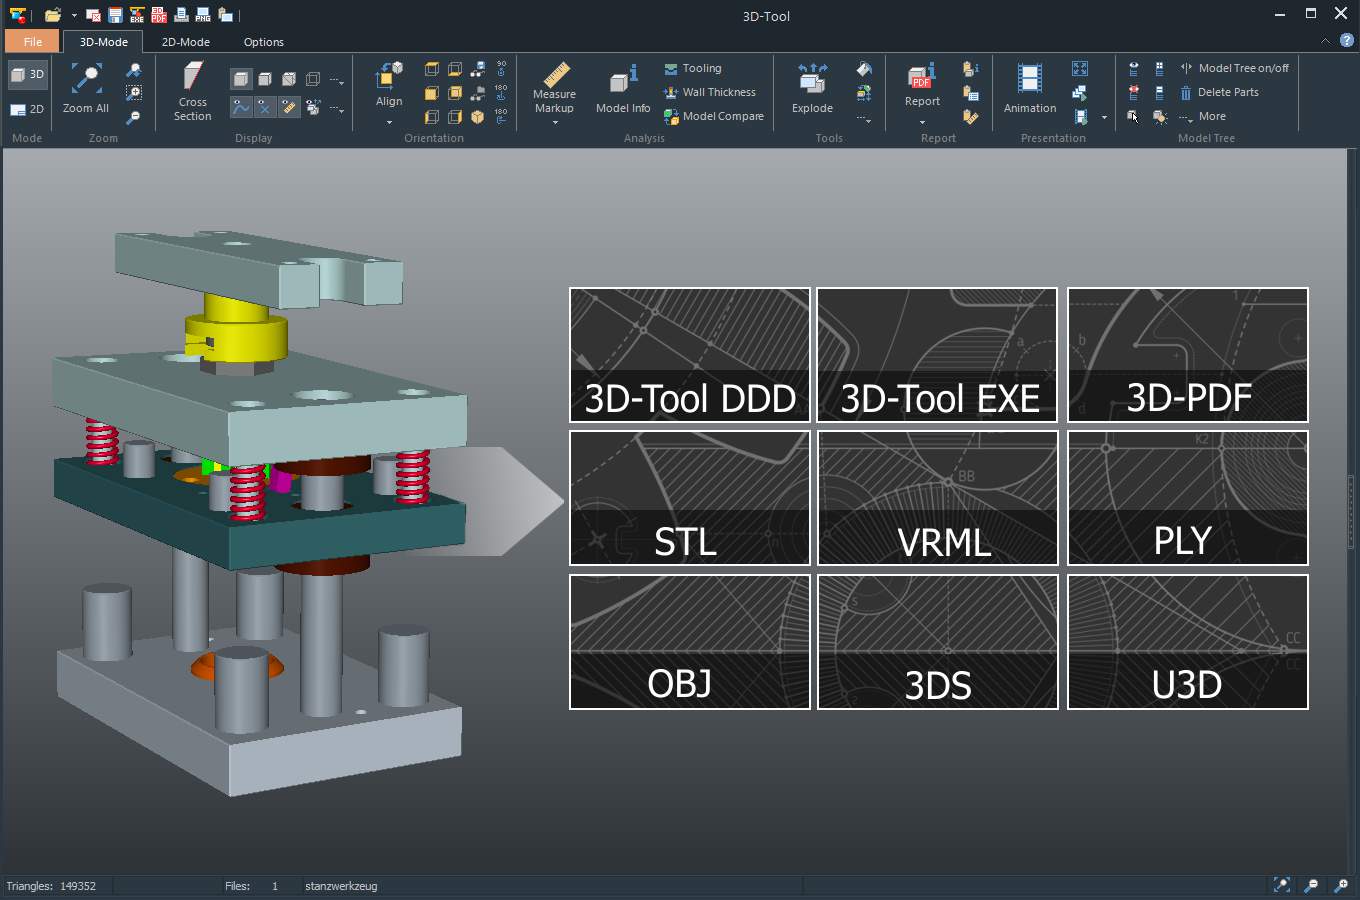 Create 3D-PDF, STL, VRML, PLY, OBJ, 3DS and U3D - files